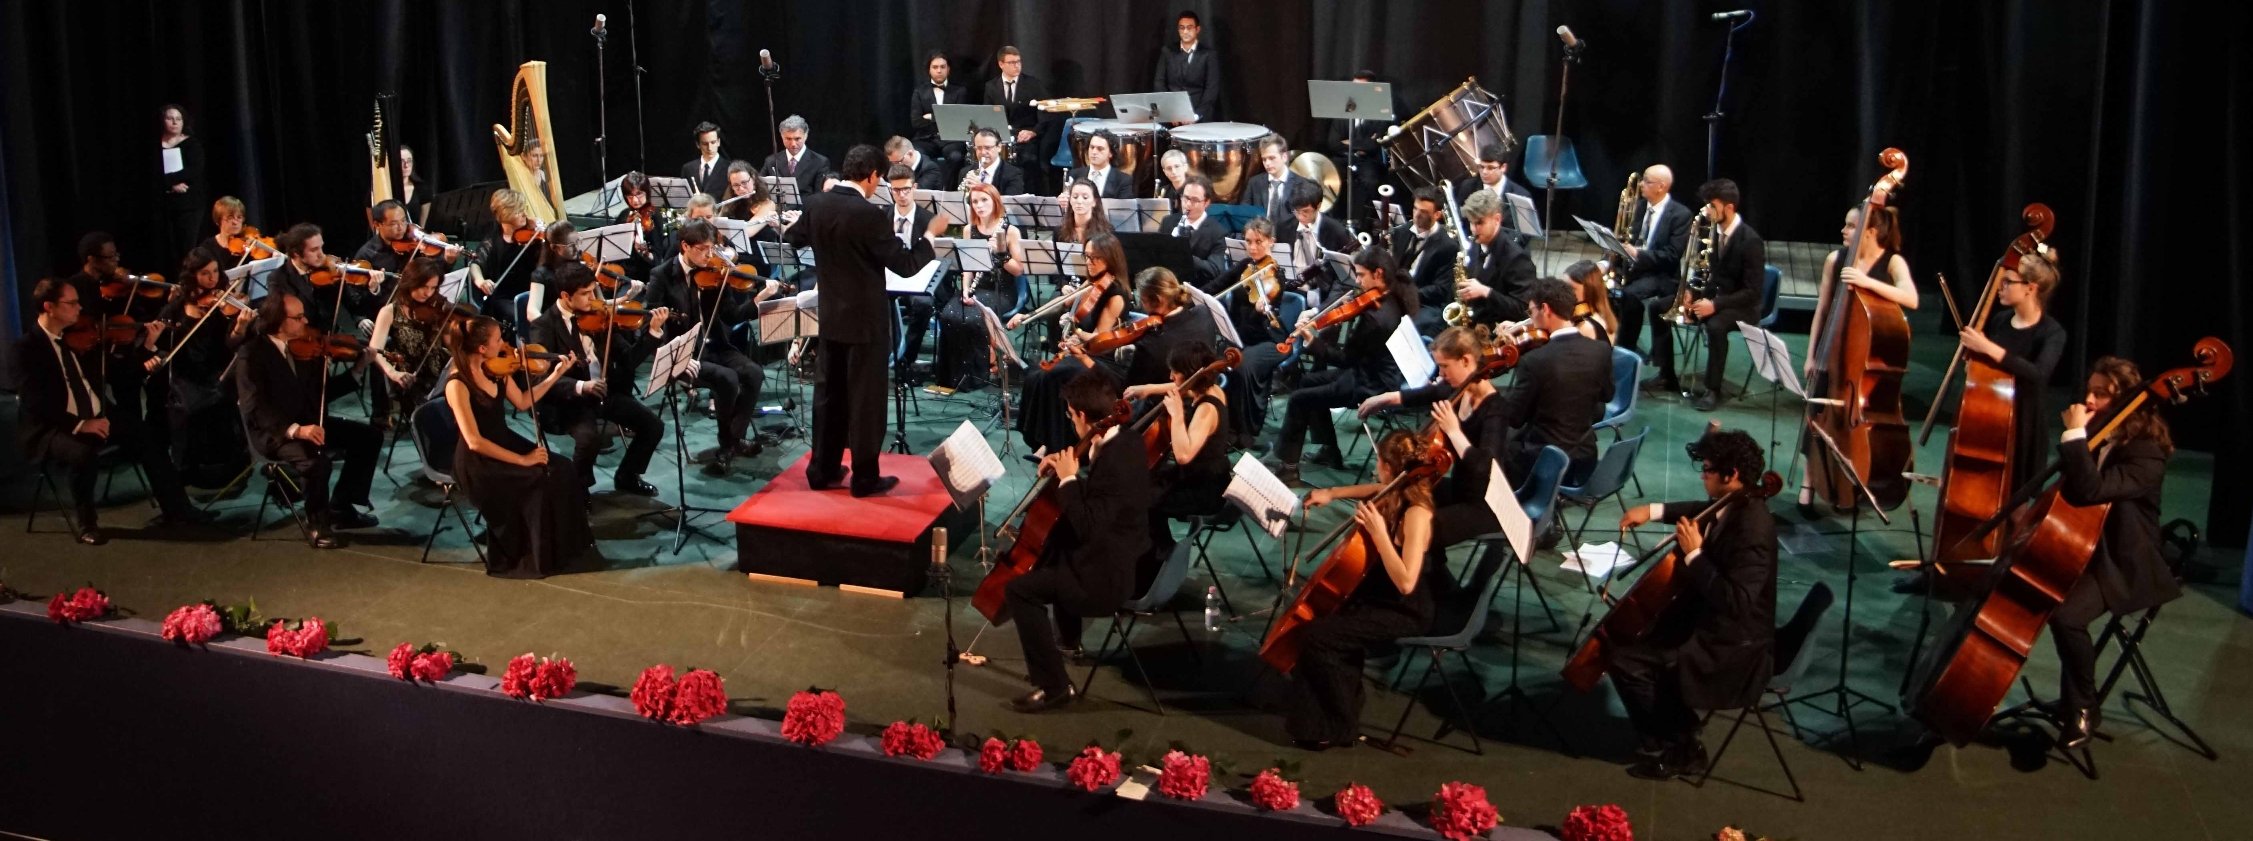 Tradizionale concerto dell’Orchestra Sinfonica del Conservatorio